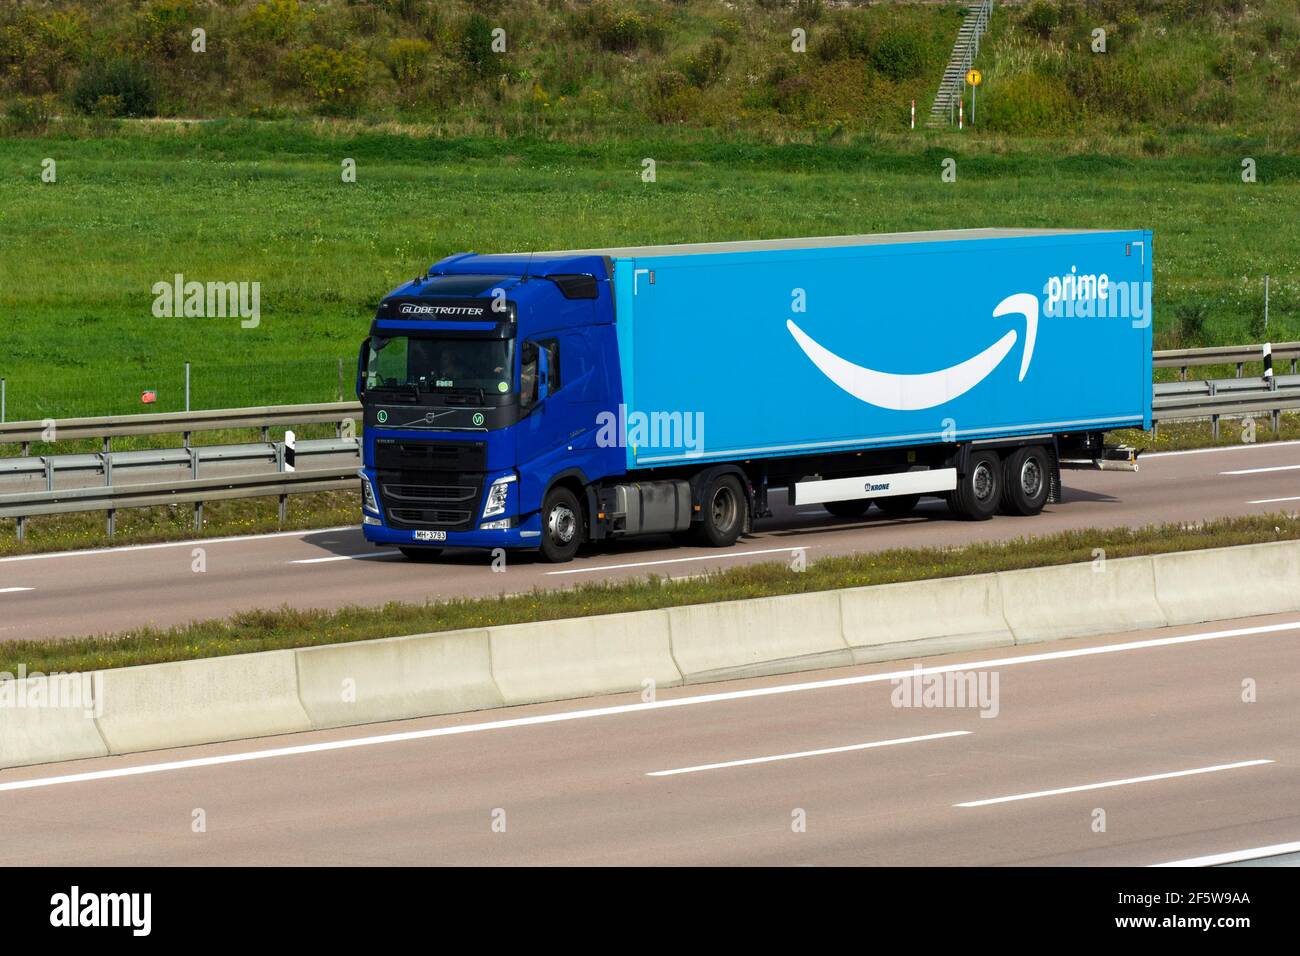 Amazon Prime Paketlogistikfahrzeug fährt auf der Autobahn A8 bei Jettingen,  Bayern, Deutschland Stockfotografie - Alamy